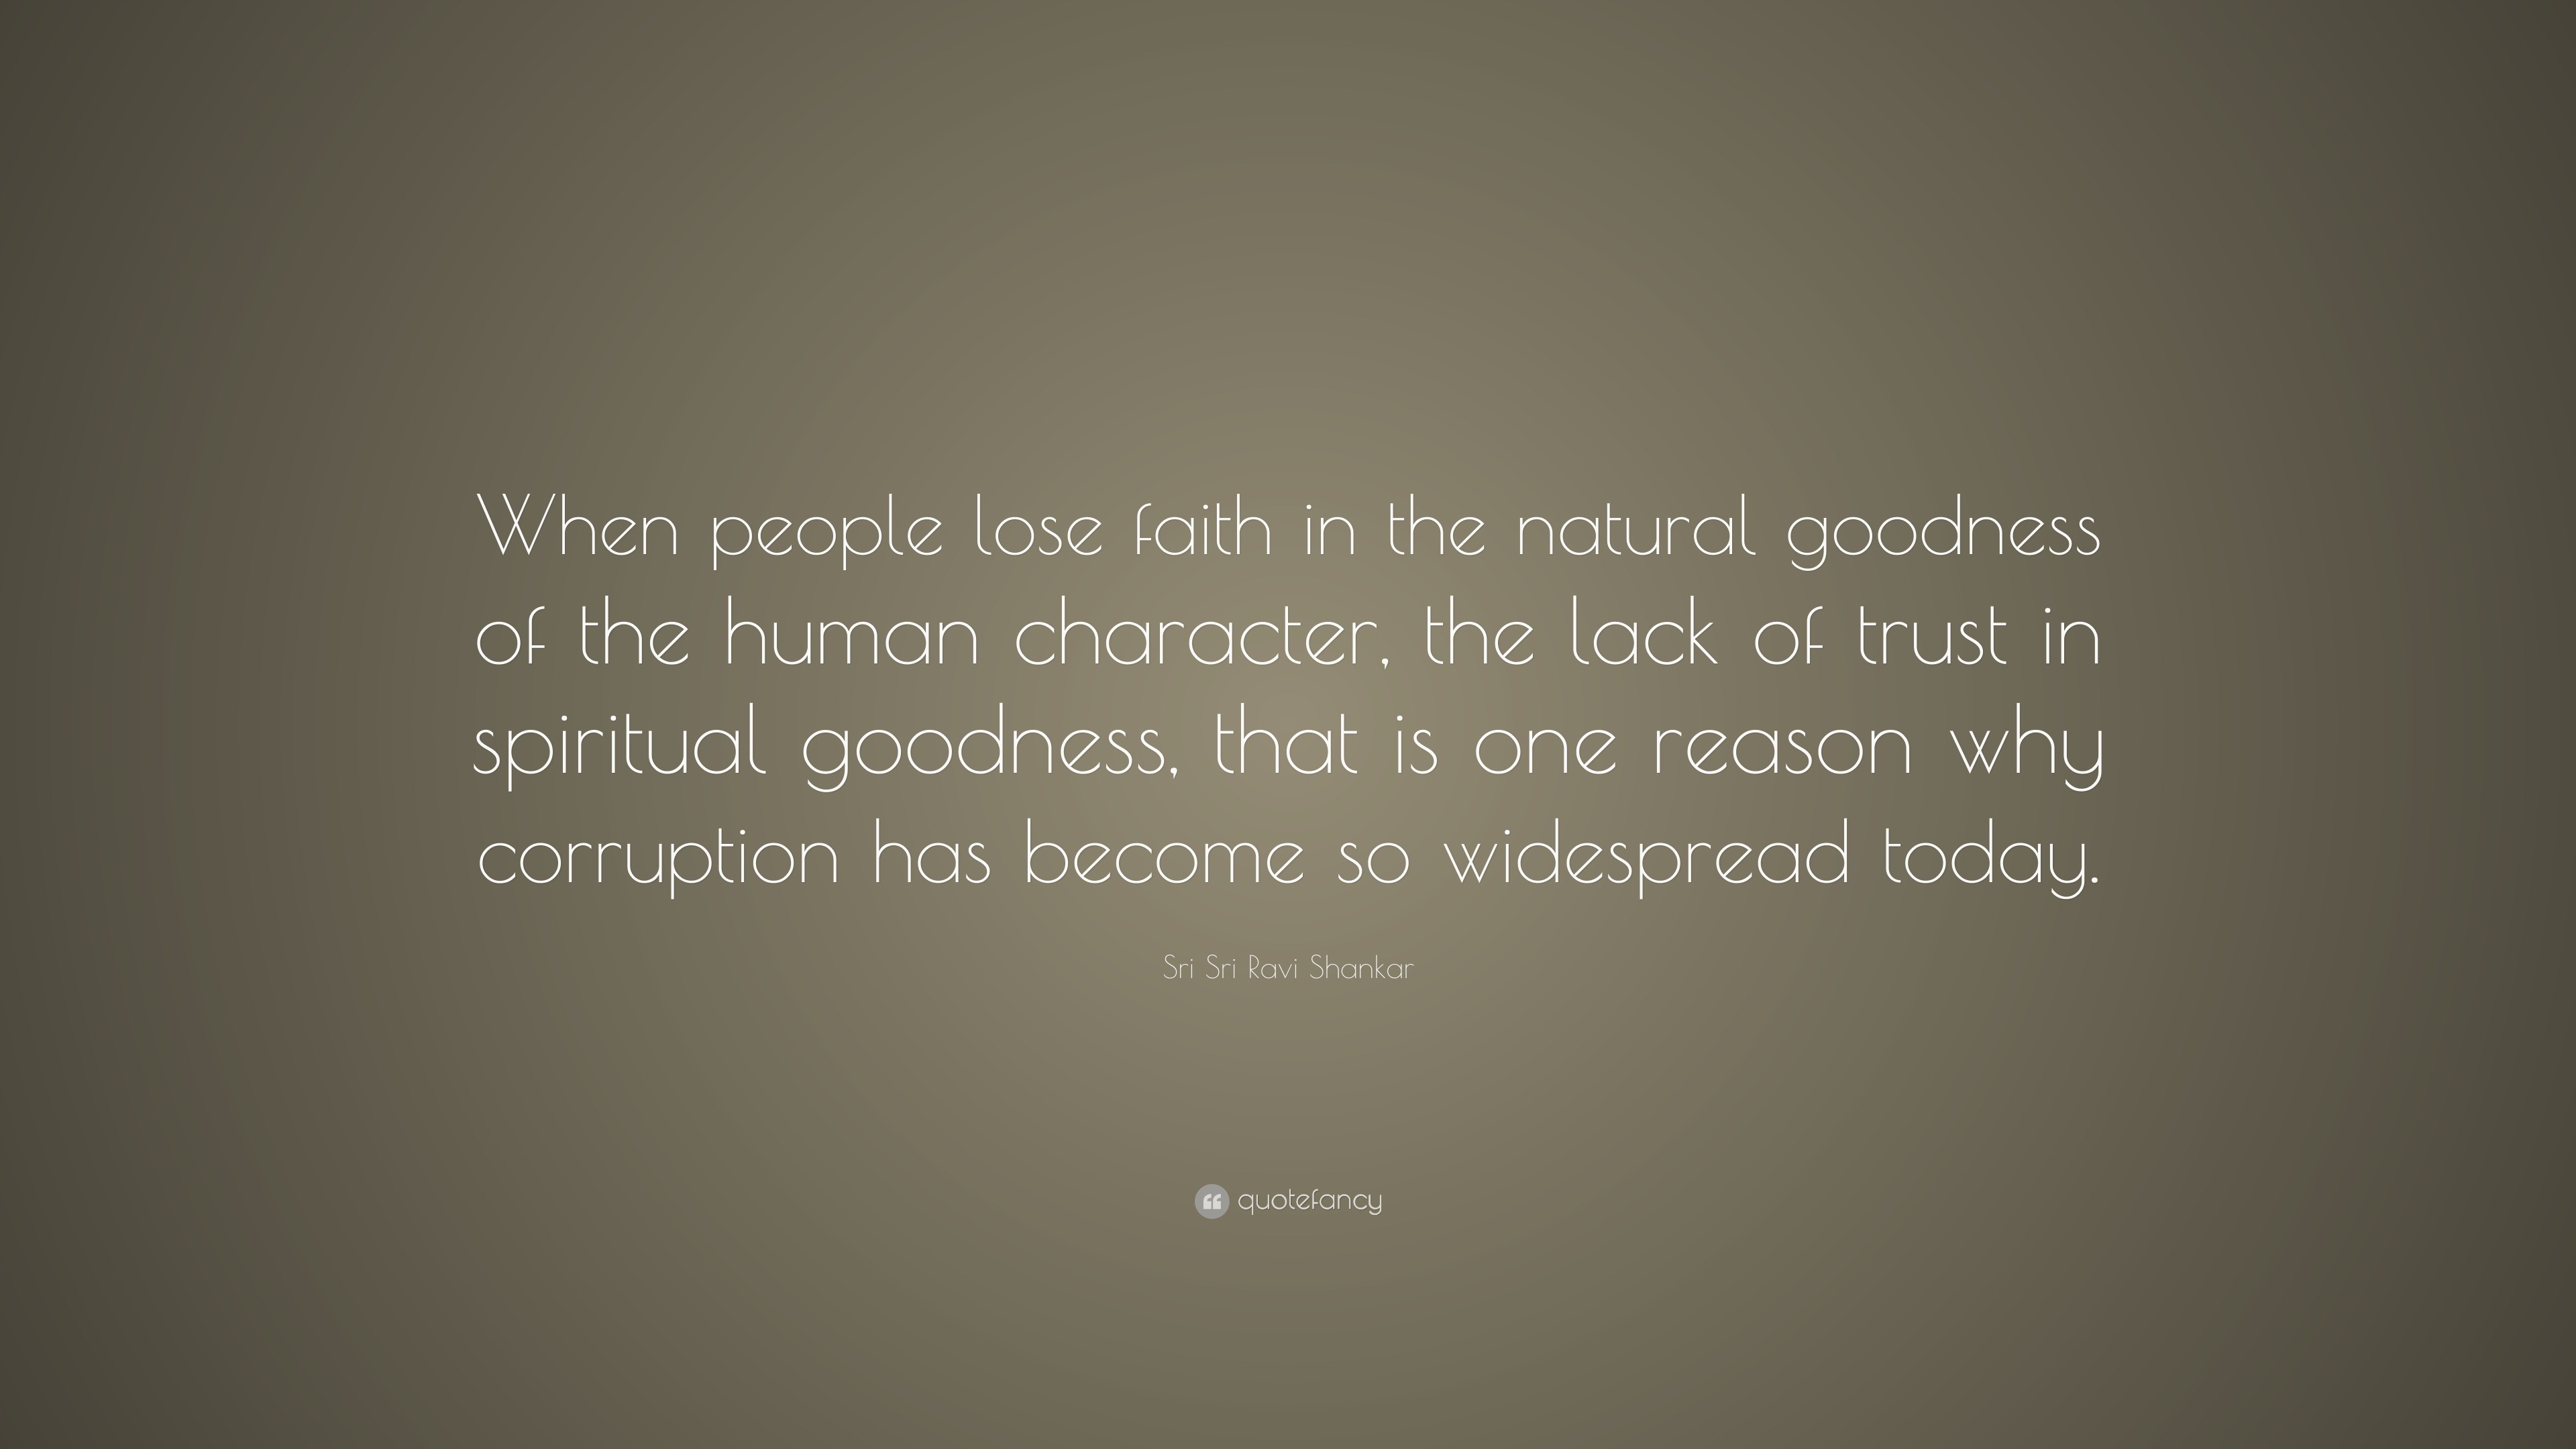 Sri Sri Ravi Shankar Quote: “When people lose faith in the natural ...